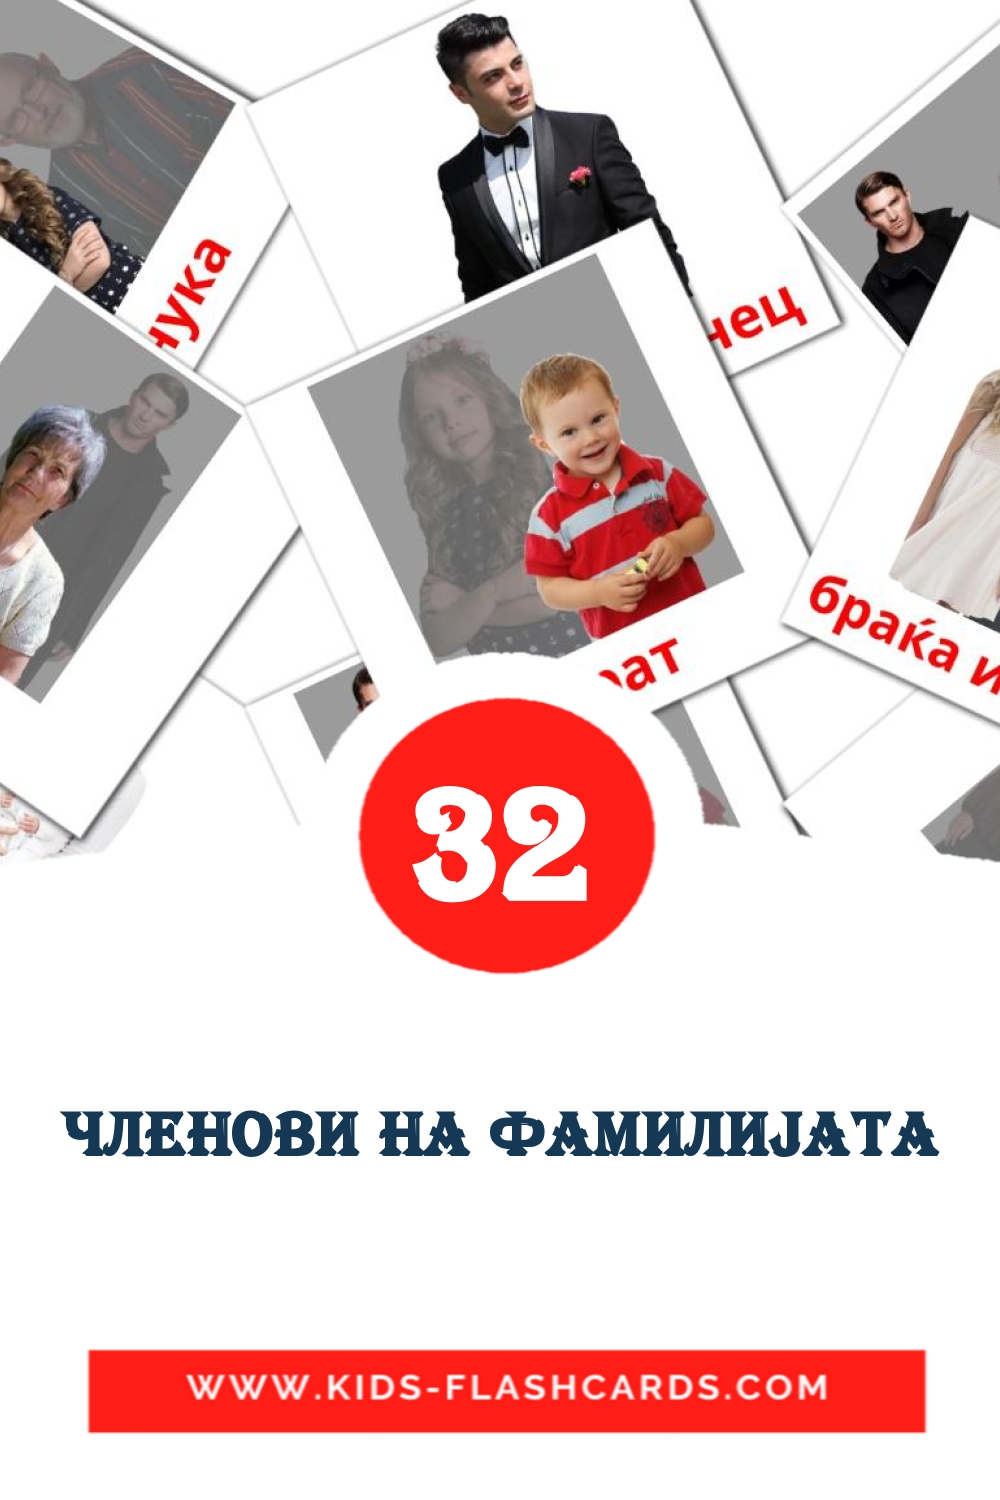 Членови на фамилиjата на македонском для Детского Сада (32 карточки)